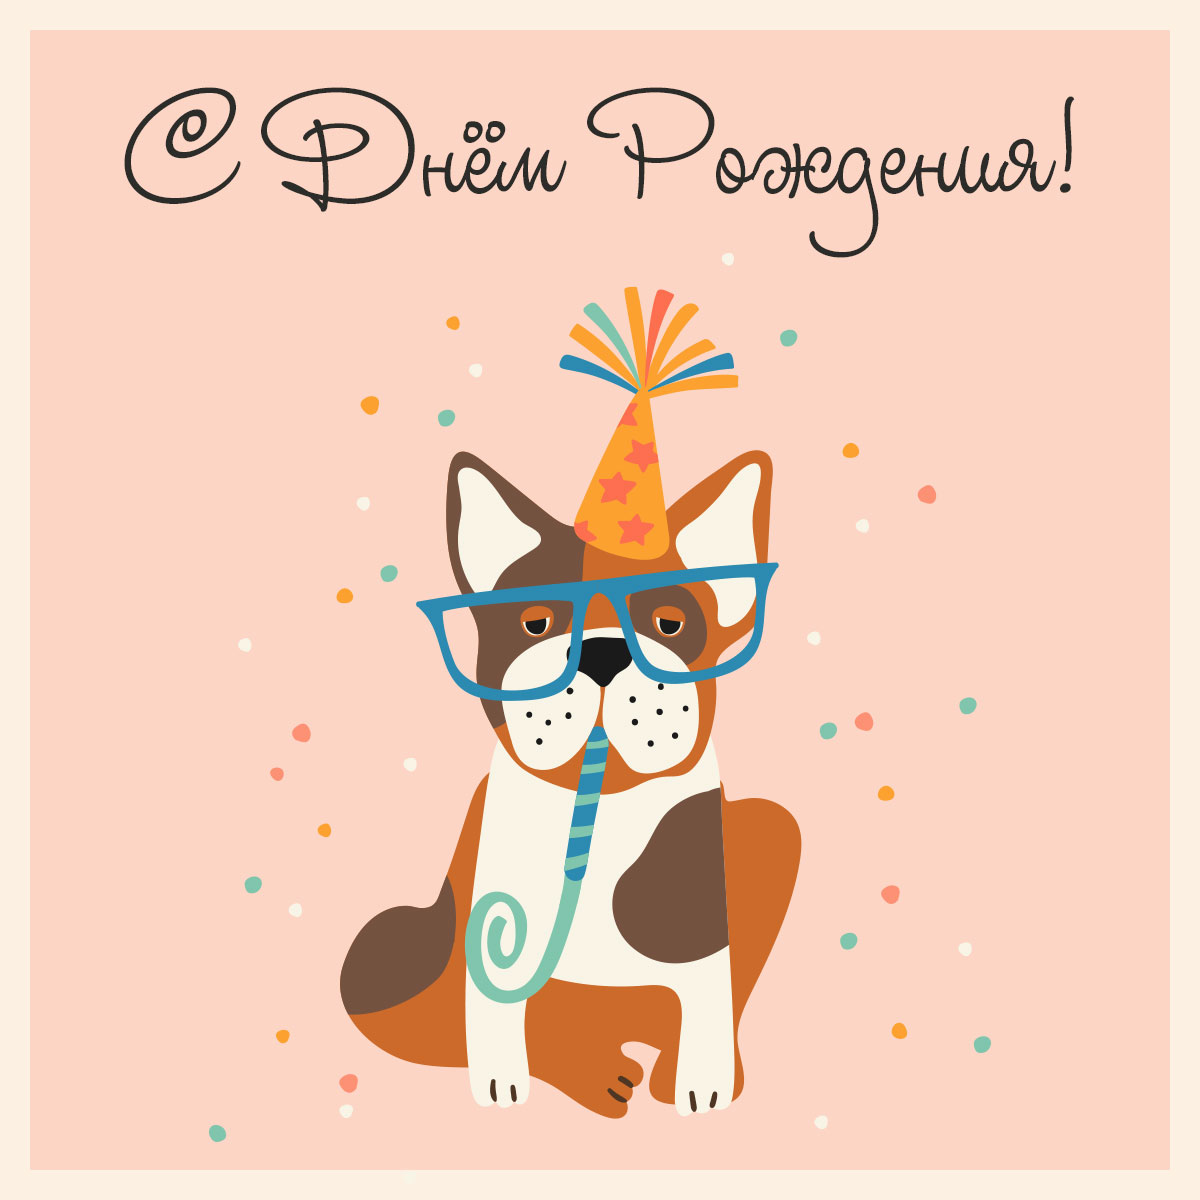 Персиковая открытка с днем рождения прикольная собака - хипстер в очках и праздничной шляпе.